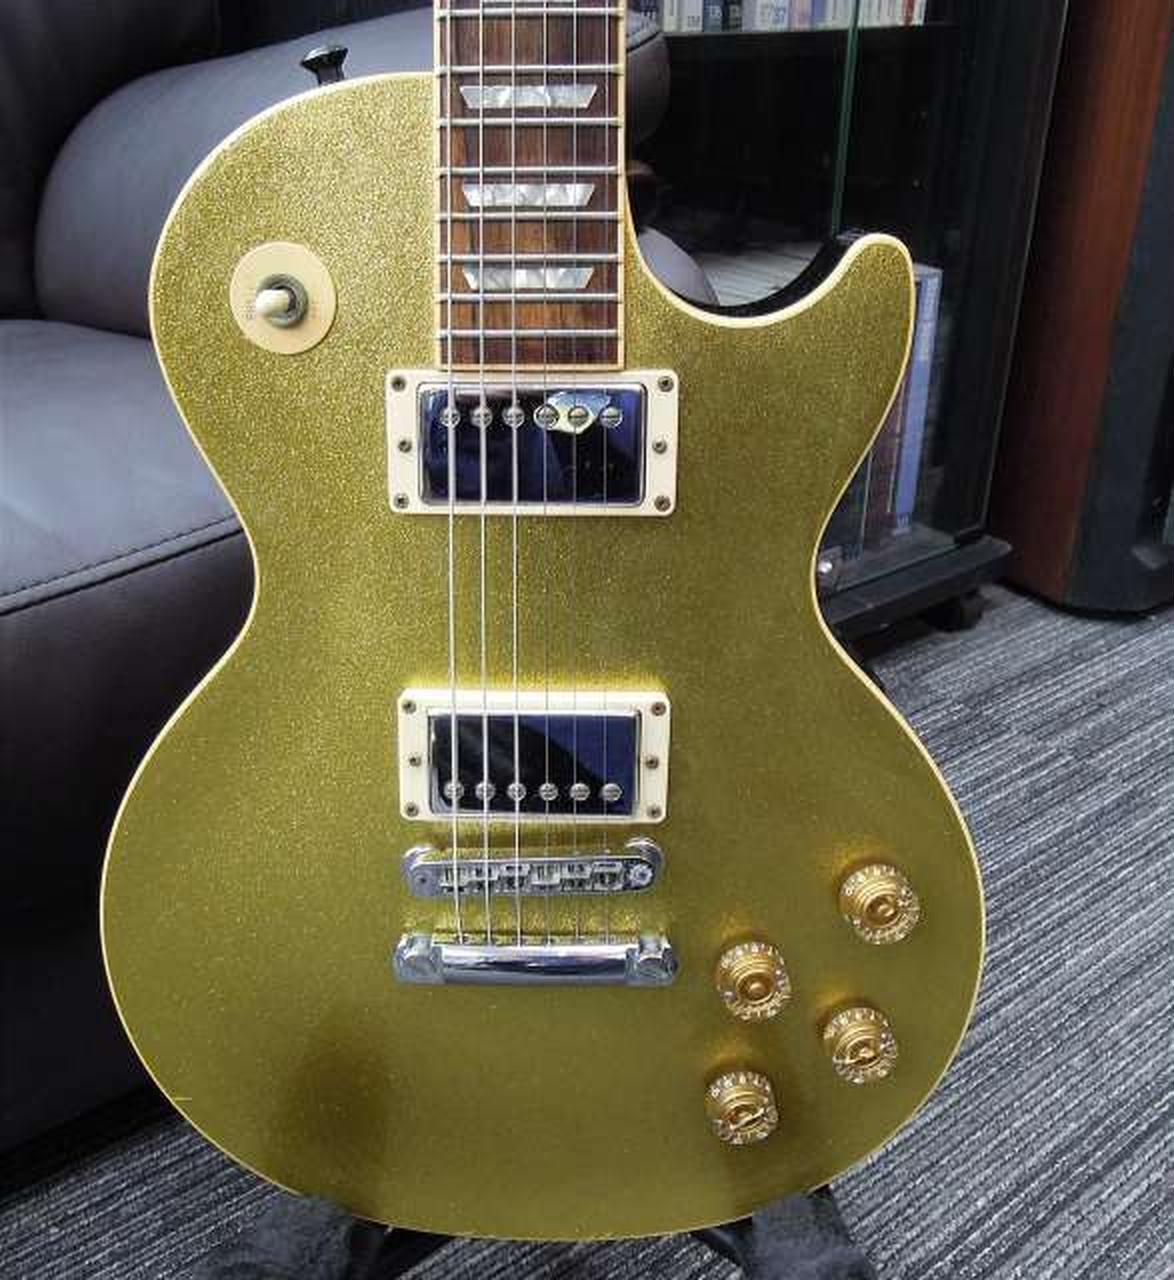 Numer modelu Paul STD Sparkle Gold Electric Guitar jako ta sama na zdjęciach